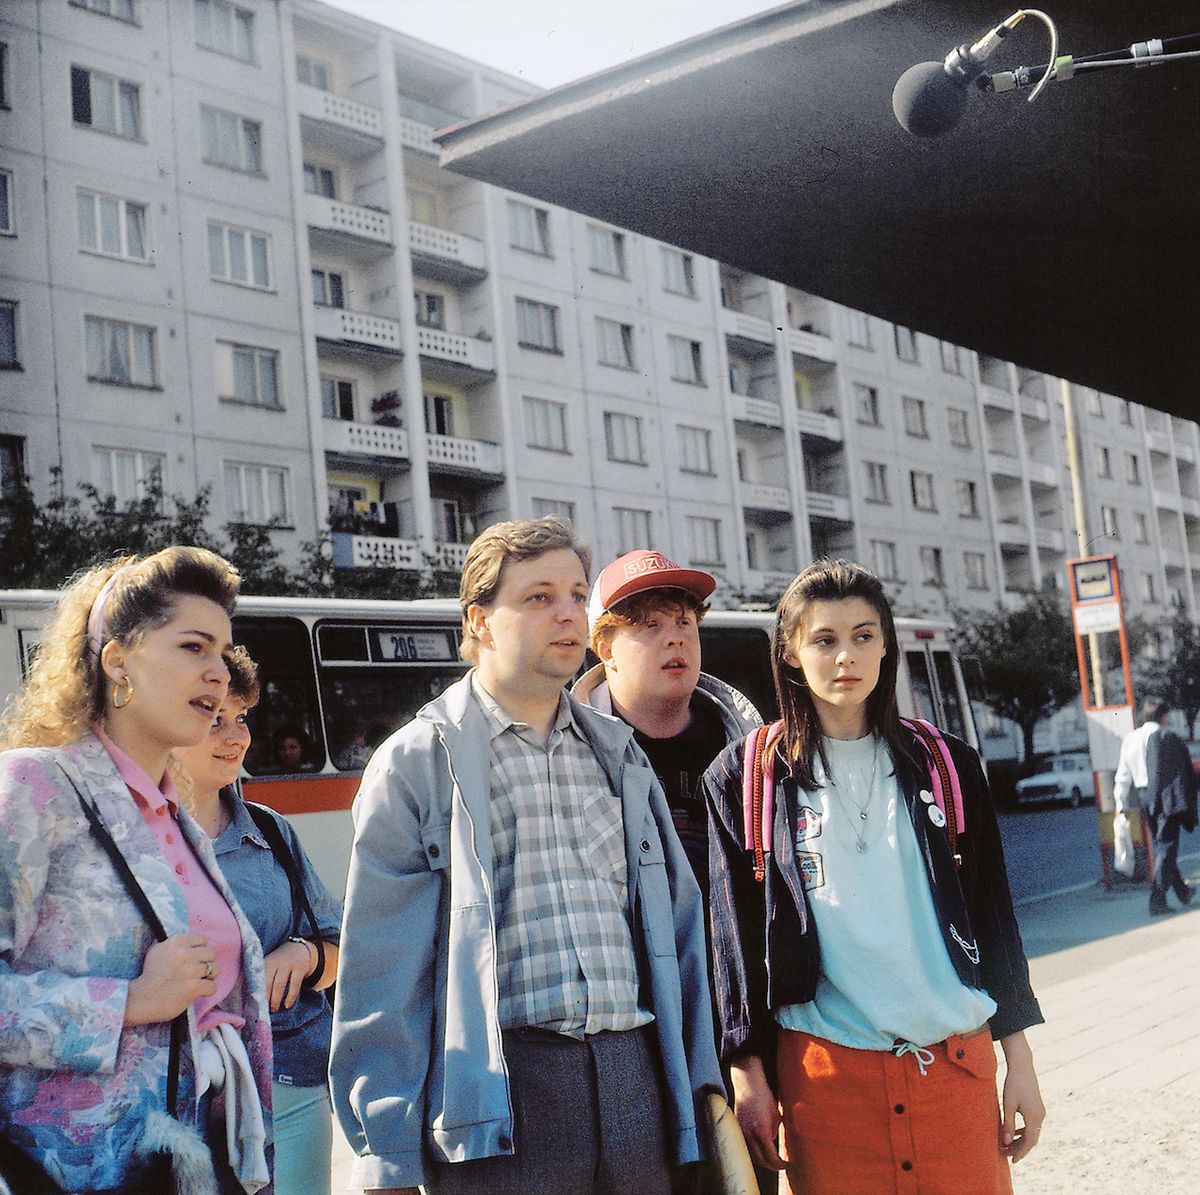 V komedii Vrať se do hrobu! (1989) poplete jako maturantka (vpravo) hlavu sociologovi v podání Milana Šteindlera (uprostřed), který byl i režisérem snímku o ošidnosti návratů v čase.